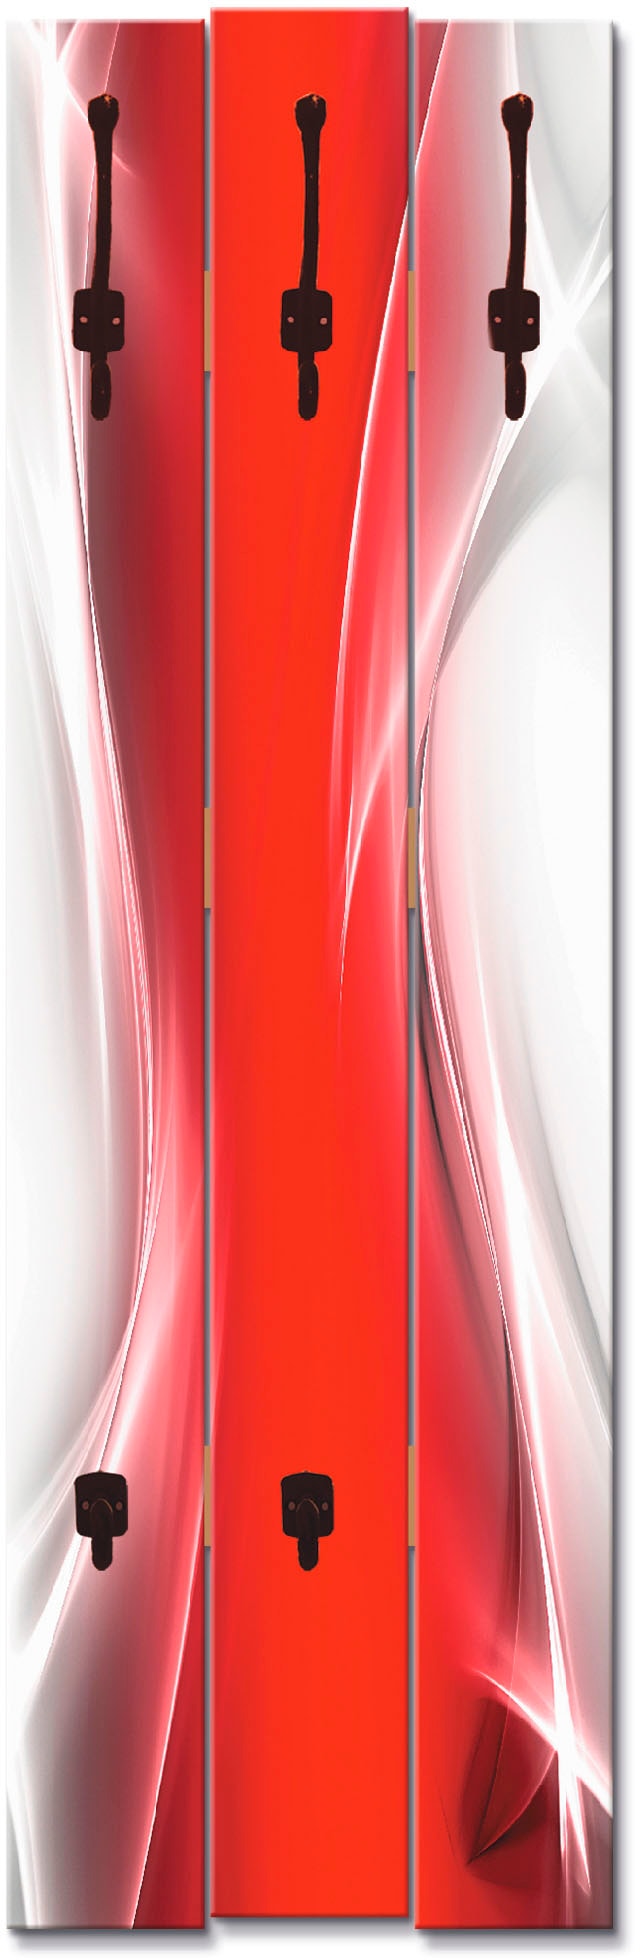 Image of Artland Garderobenleiste »Kreatives Element Rot für Ihr Art-Design«, platzsparende Wandgarderobe aus Holz mit 5 Haken, geeignet für kleinen, schmalen Flur, Flurgarderobe bei Ackermann Versand Schweiz